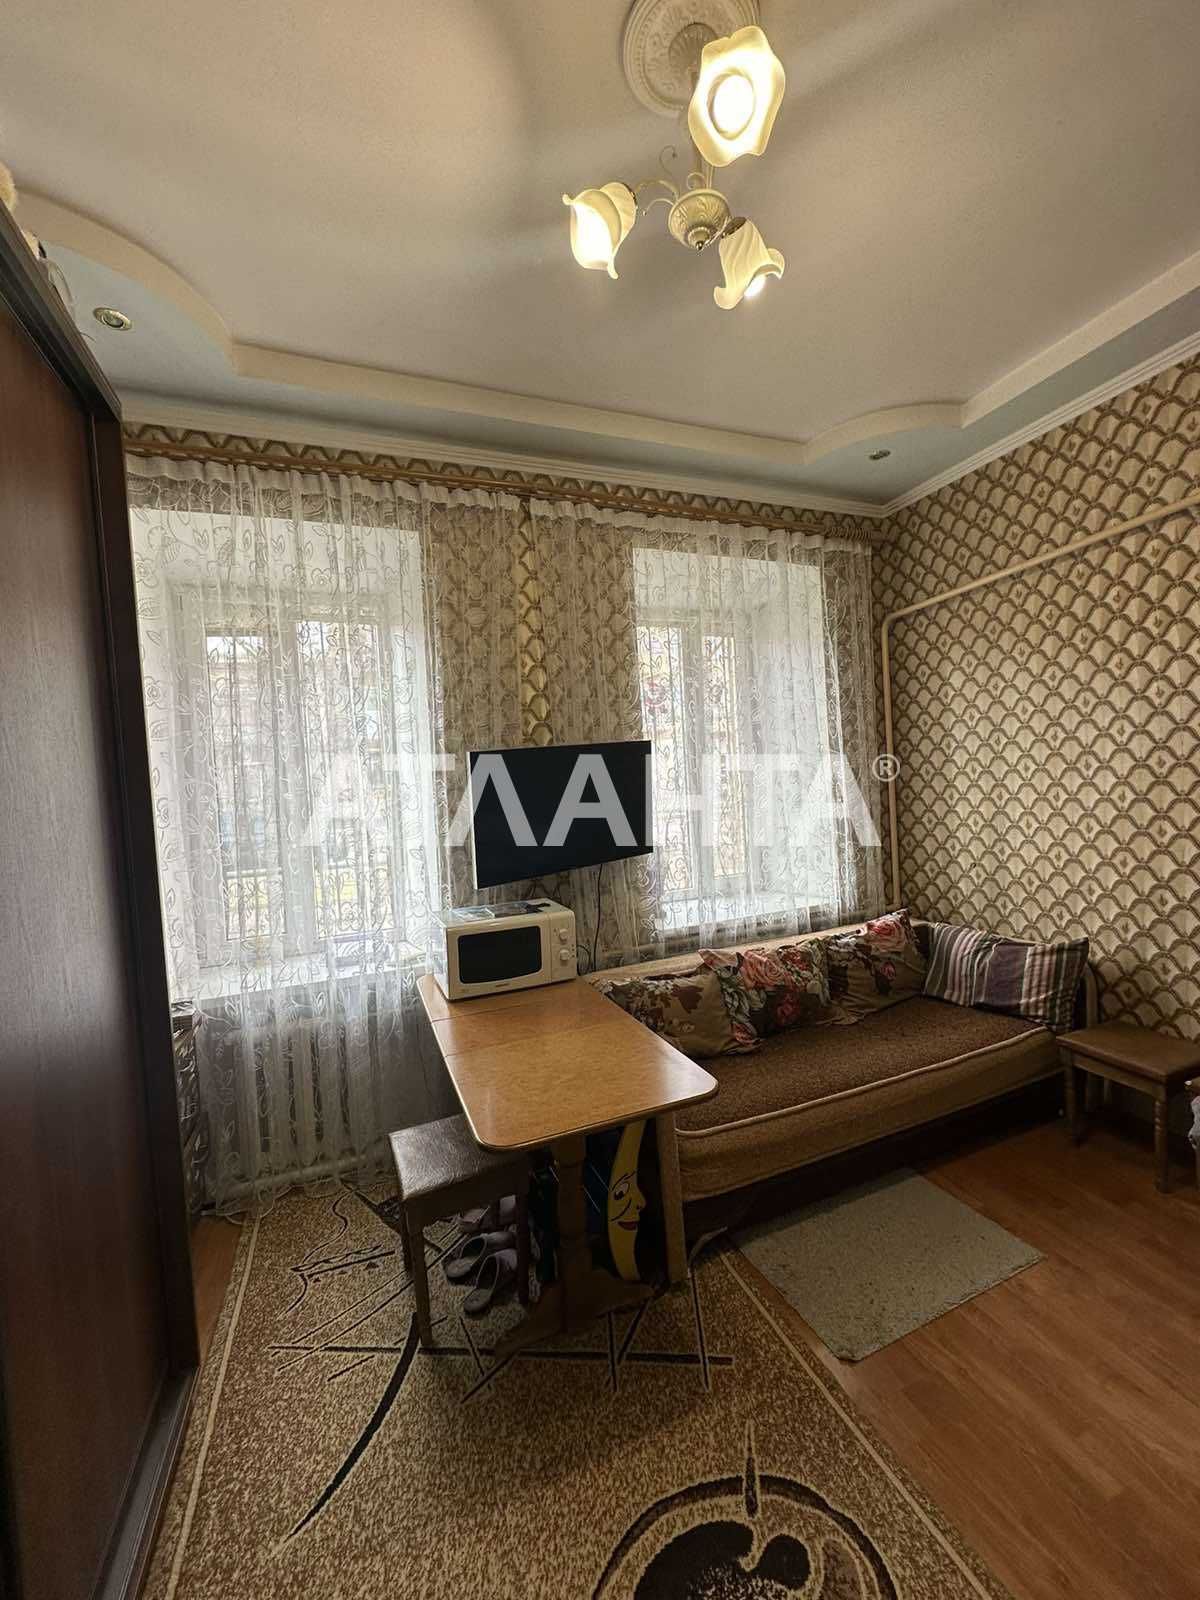 Продаётся комната в коммунальной квартире по улице Лазарева.